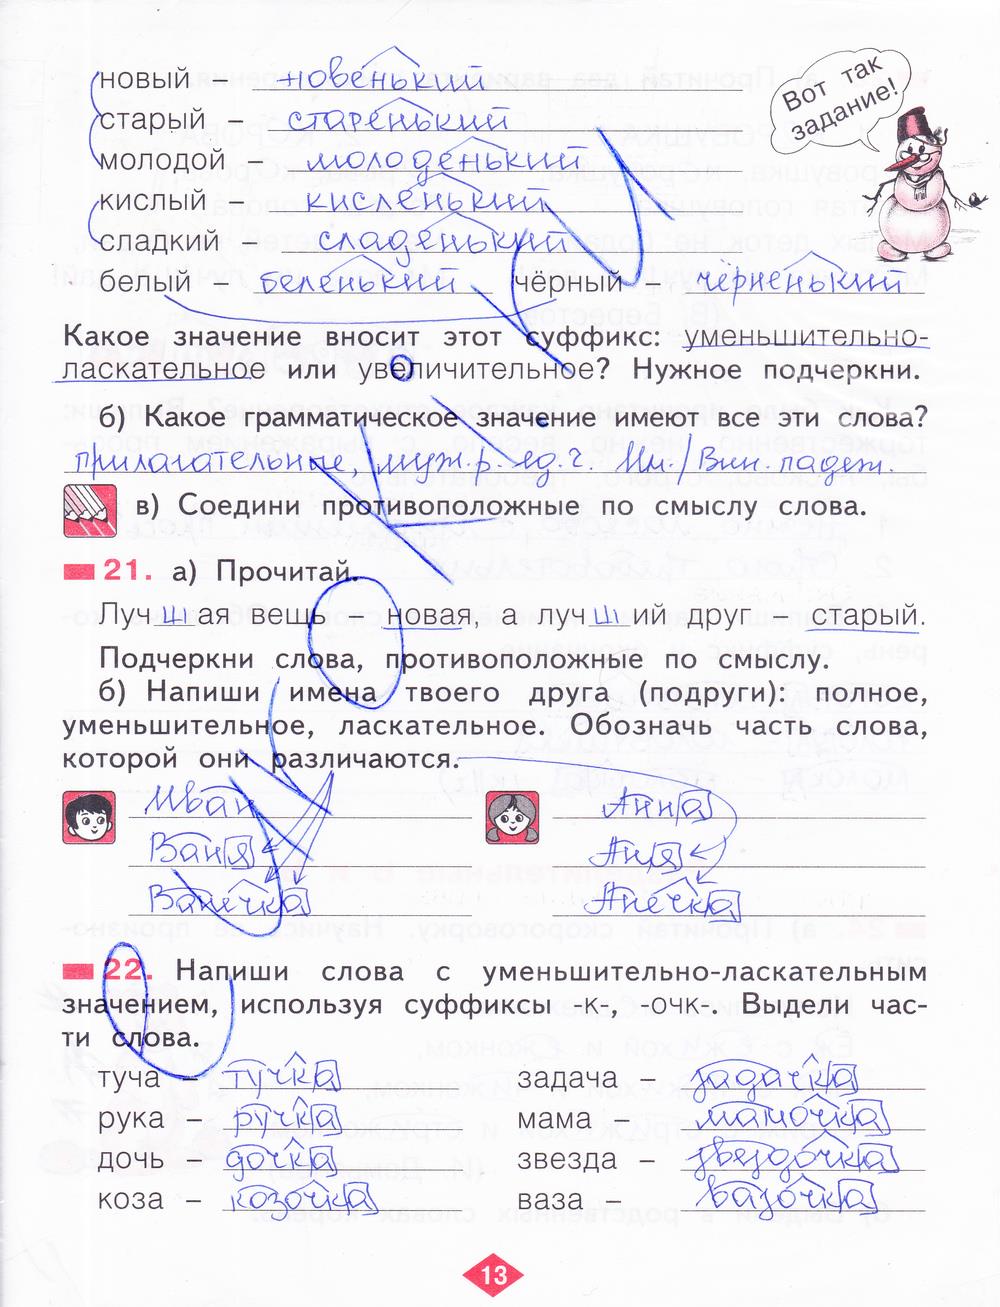 гдз 2 класс рабочая тетрадь часть 2 страница 13 русский язык Яковлева